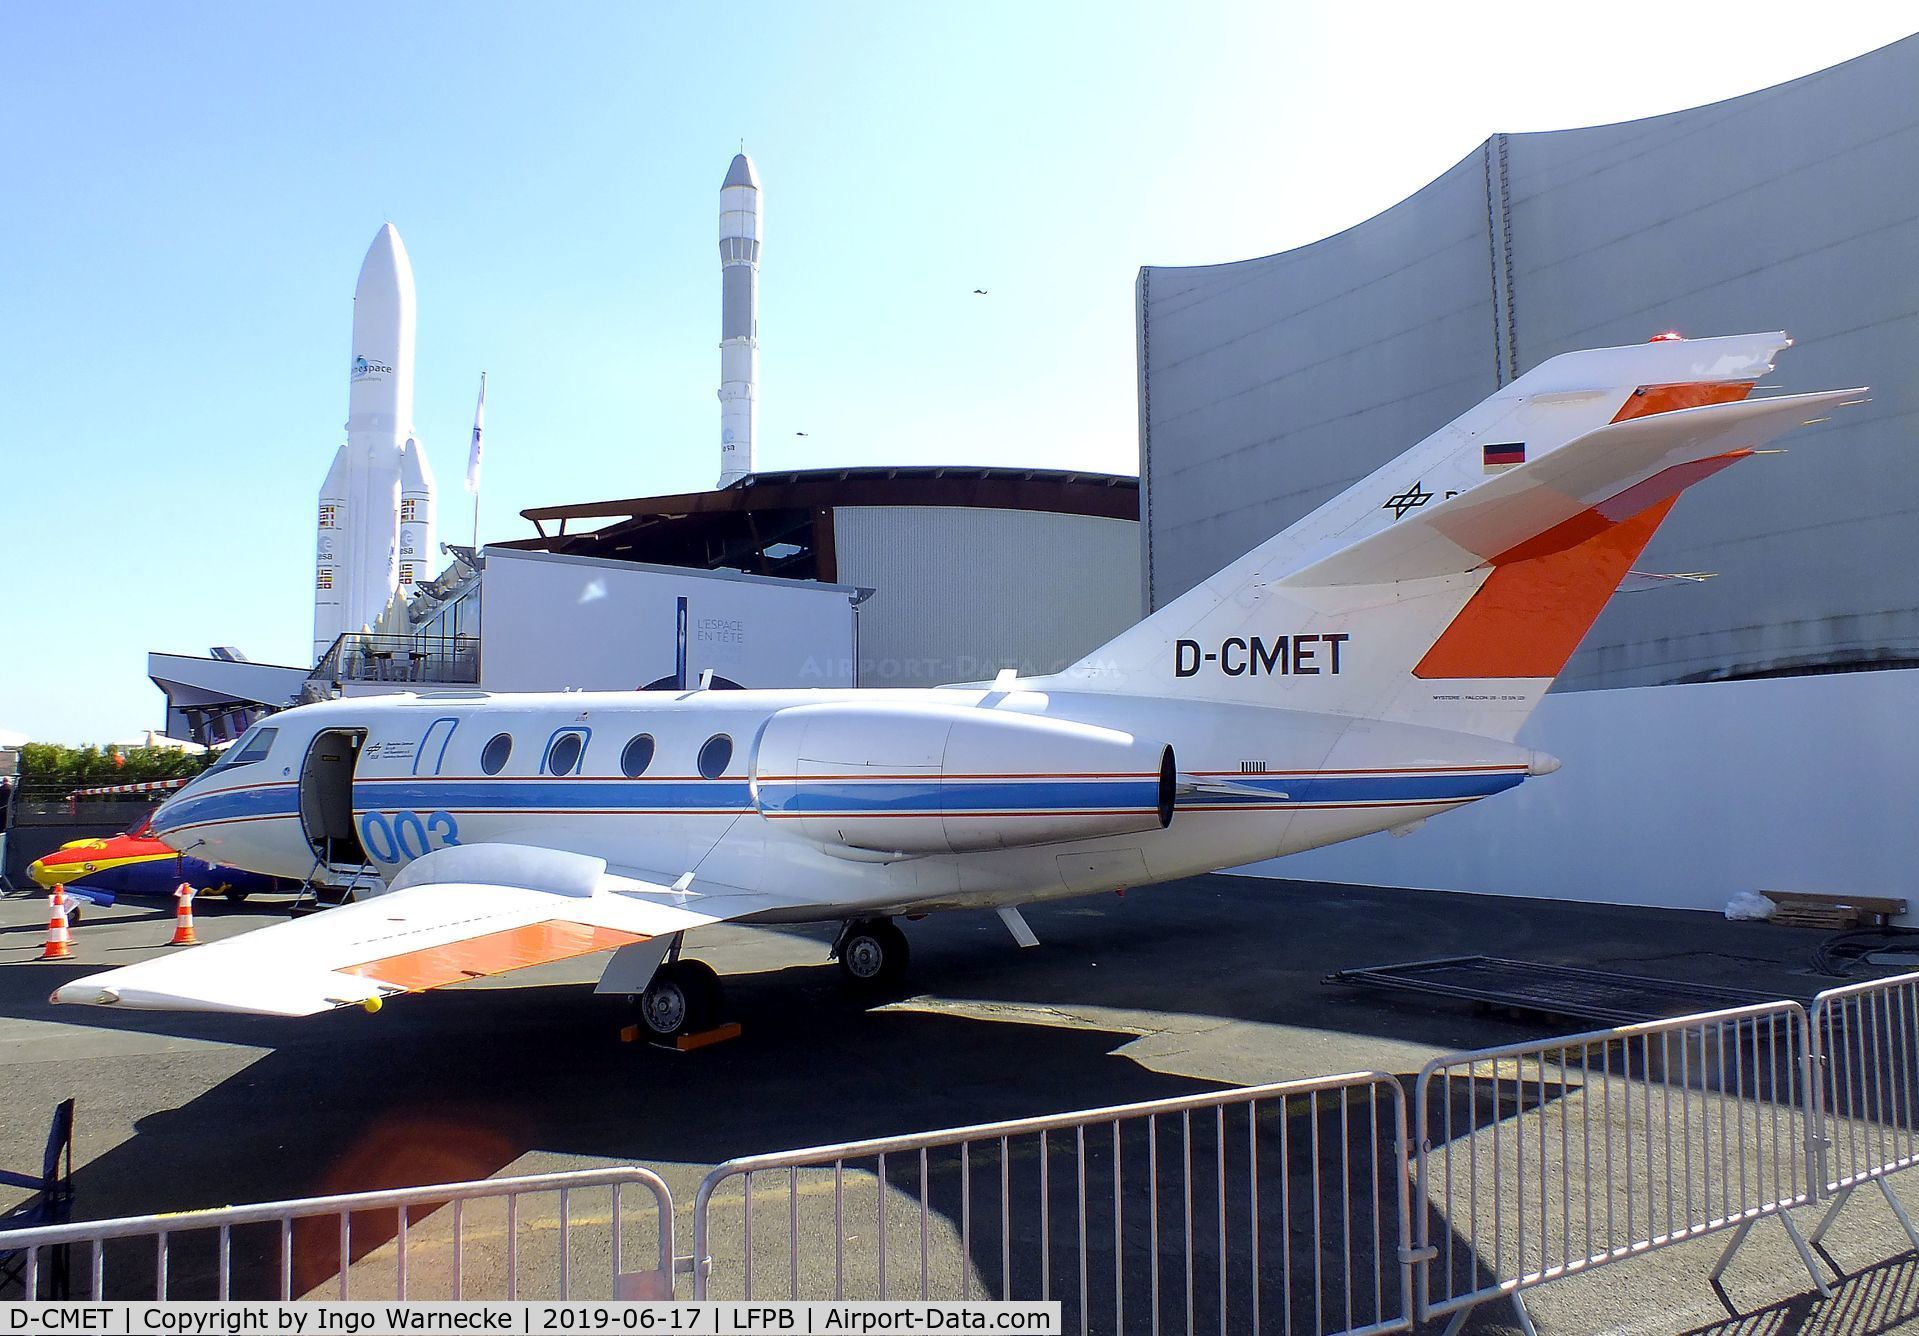 D-CMET, 1976 Dassault Falcon (Mystere) 20E-5 C/N 329, Dassault Falcon 20E-5 of the DLR at the Aerosalon 2019, Paris